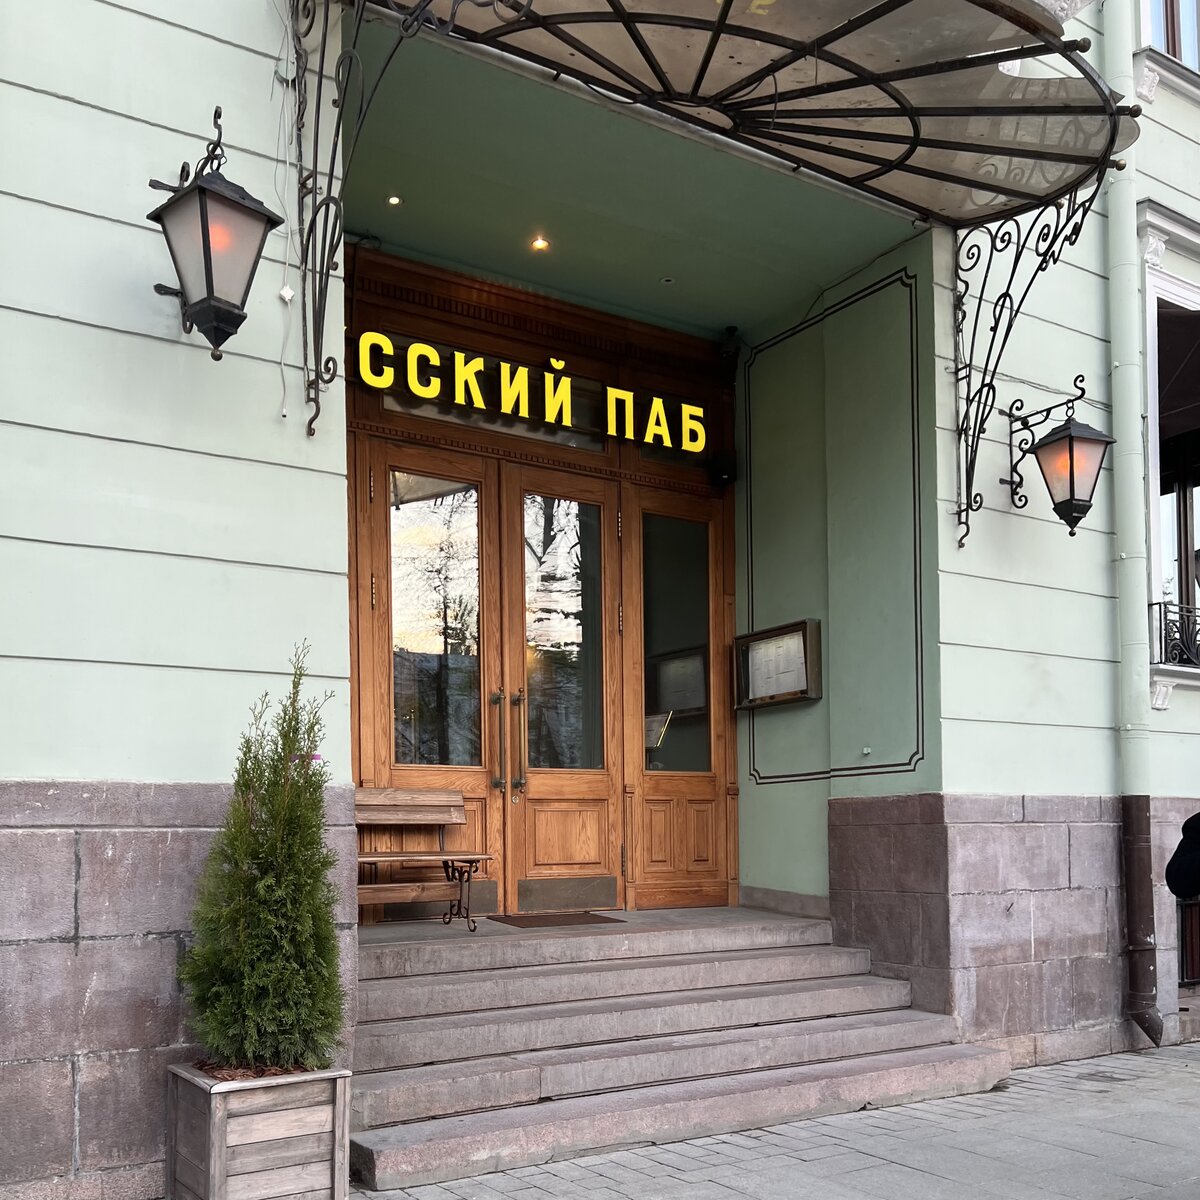 Вход в «Русский паб» находится на Тверском бульваре, недалеко от здания ТАСС. Желтая вывеска, большие старые деревянные двери в узорах, далее фойе и два обеденных зала.